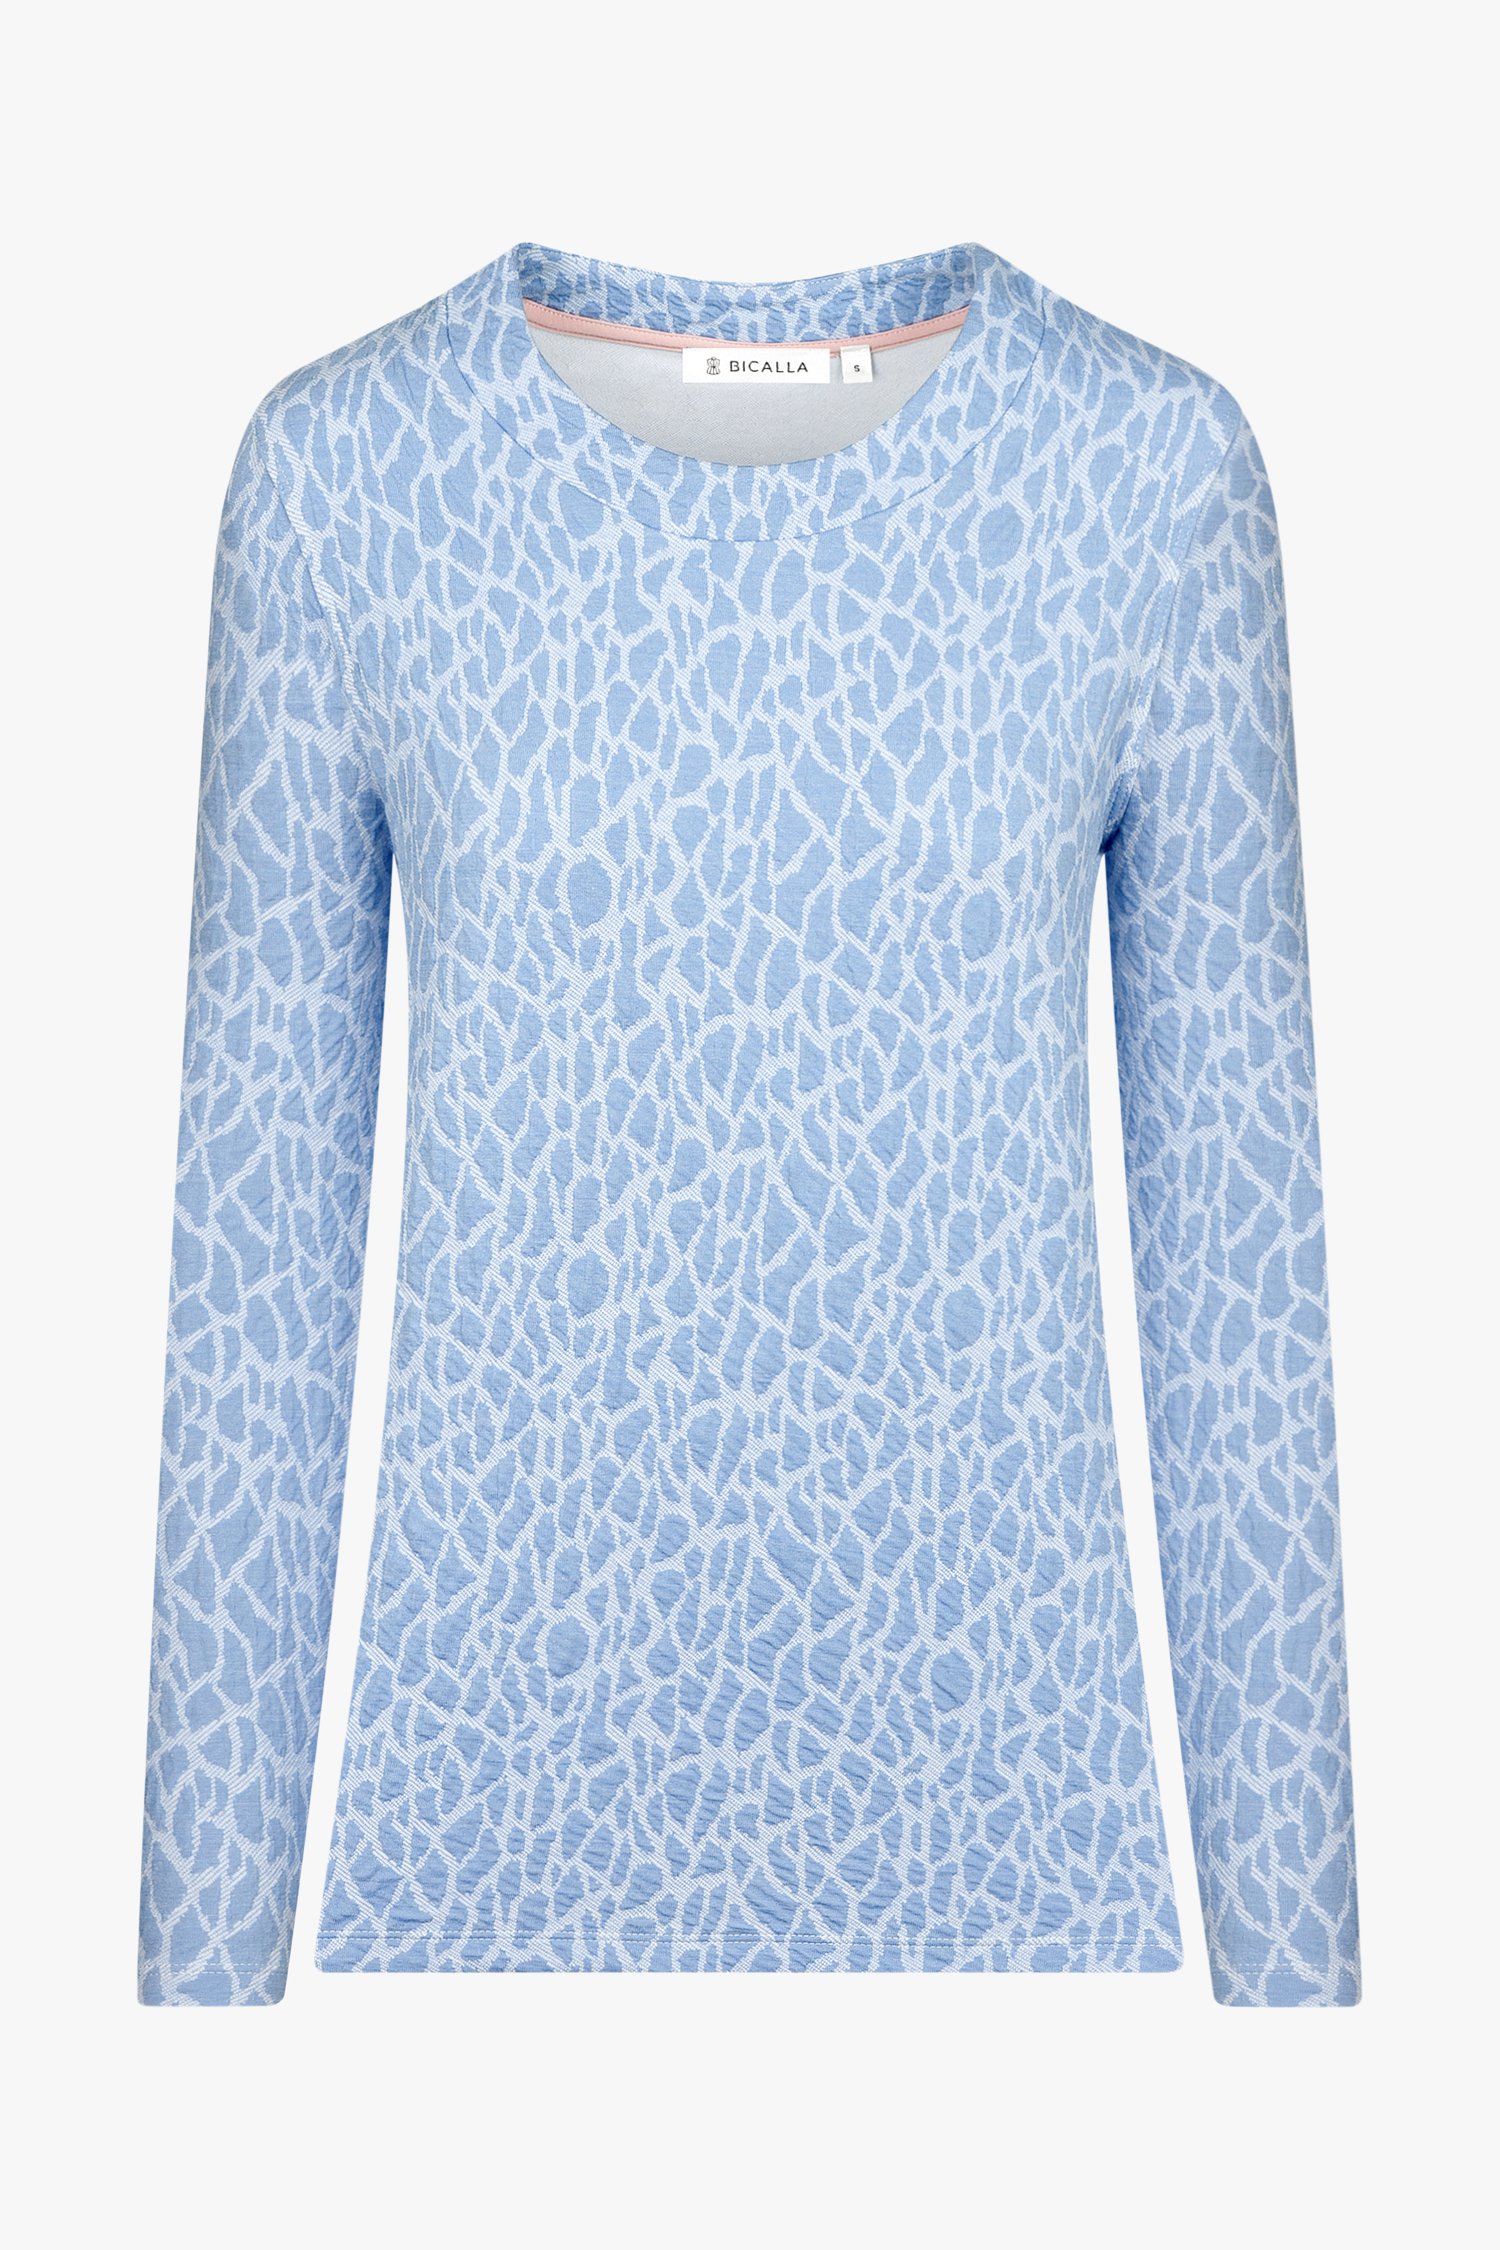 Lichtblauw T-shirt met print in structuurstof van Bicalla voor Dames